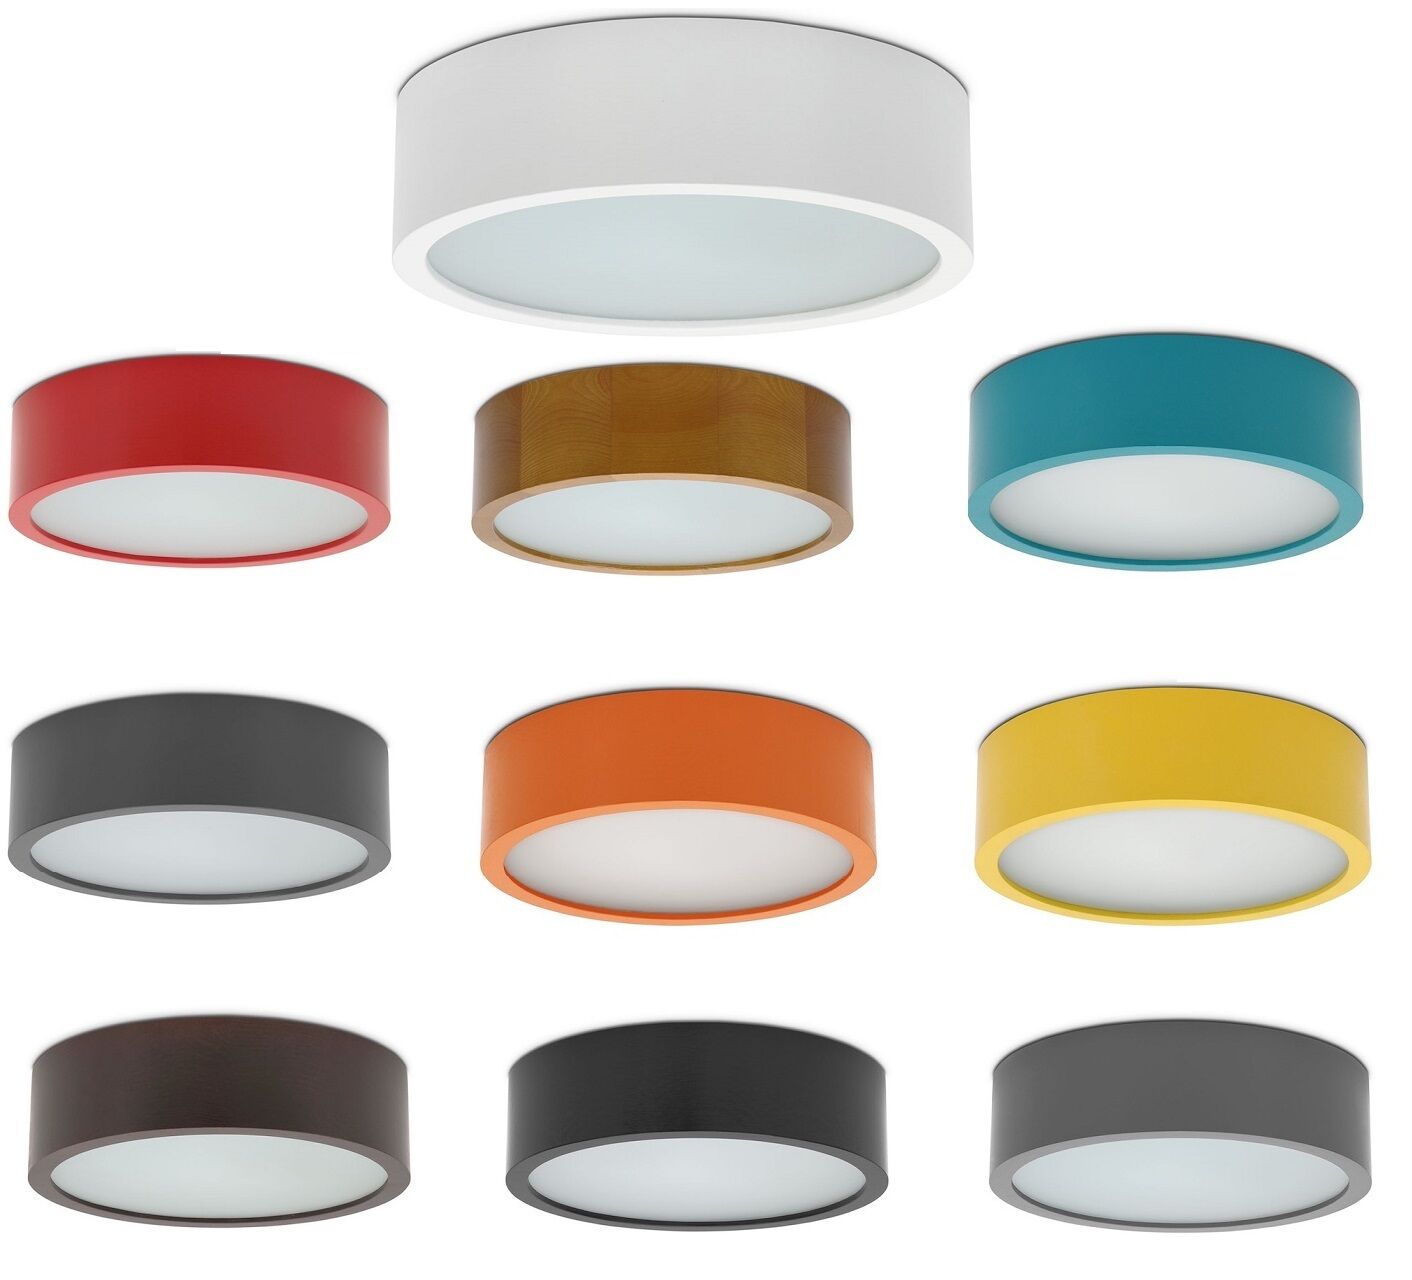 Viki Deckenleuchte / Deckenlampe Lampen Modern Modell:: Farbe:: 275 Eiche 1xE27 Viki Viki 275